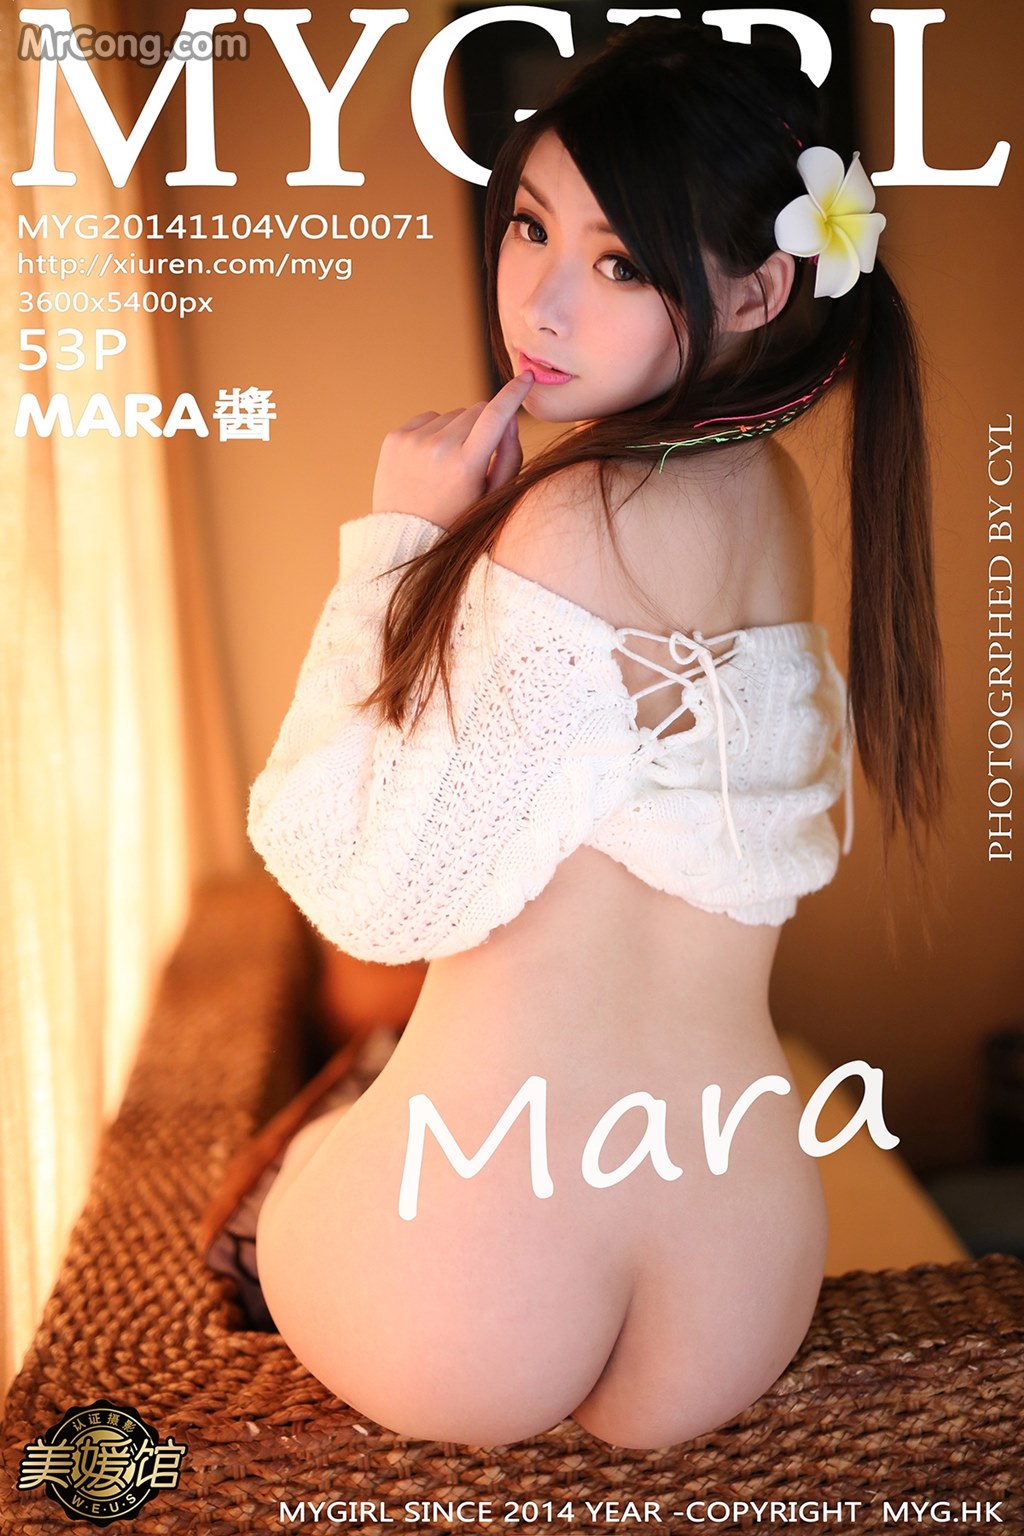 MyGirl Vol.071: Model Mara Jiang (Mara 酱) (54 photos) photo 1-0